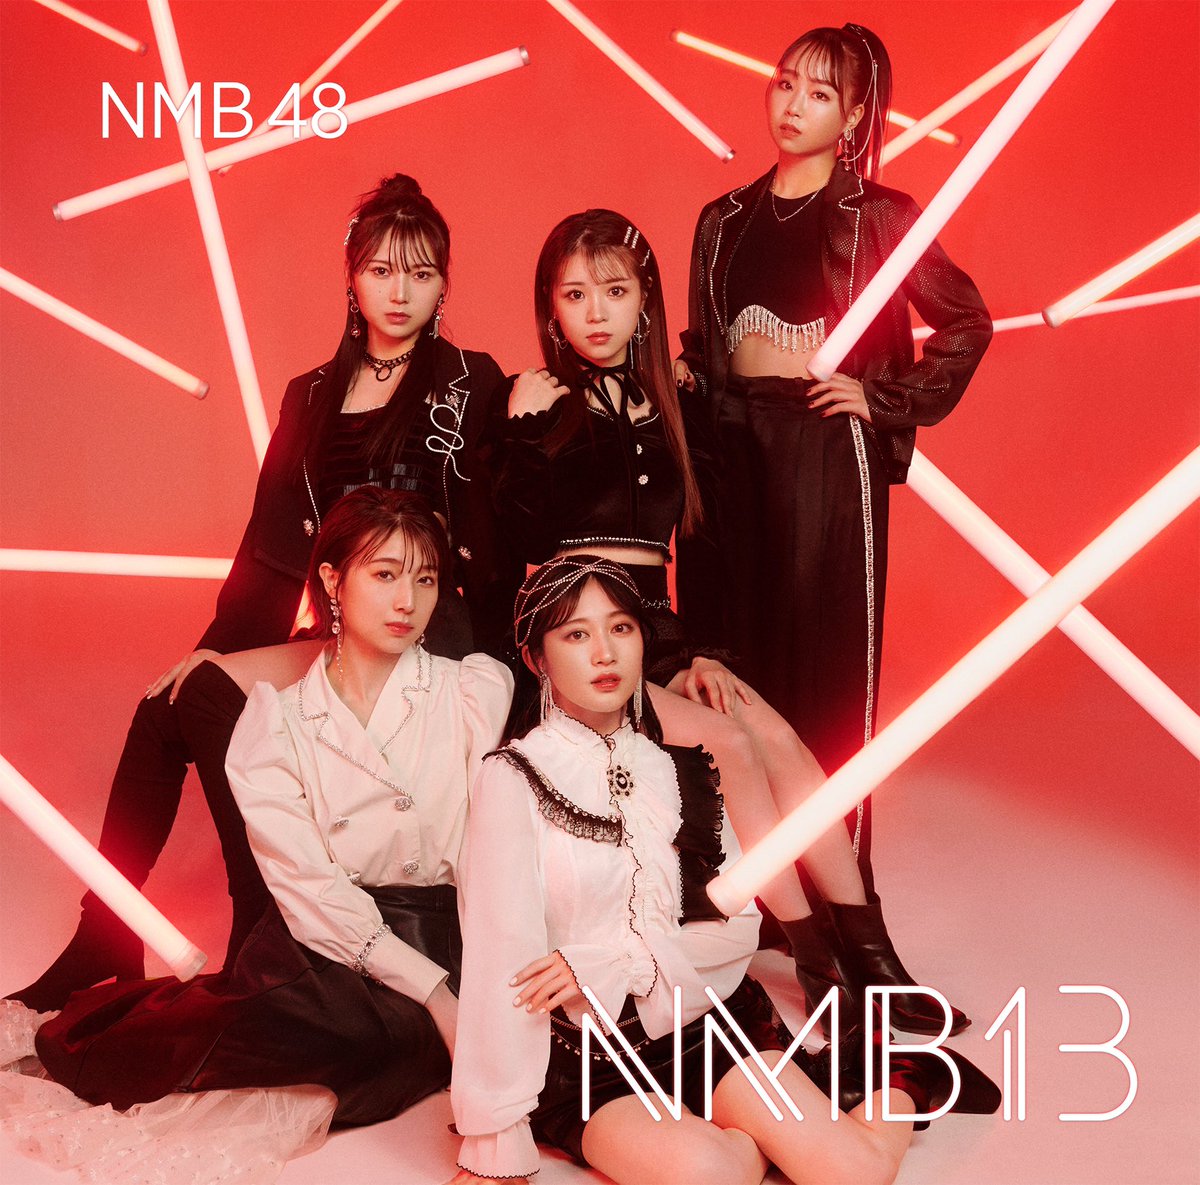 test ツイッターメディア - ▶︎▷🗯#NMB48 NEWS🗯◁◀︎

        NMB48 4th ALBUM
     『#NMB13』発売決定
  🎬 2023.03.08. release!! 🎬

アルバムタイトルは「NMB13(ナンバサーティーン)」！アルバム表題曲「#Done」をはじめ、オリジナルユニット曲を含めた、全17曲を収録。 

🐅詳しくはこちら！
https://t.co/usdGTX5UoP https://t.co/lYWjfRqAEH